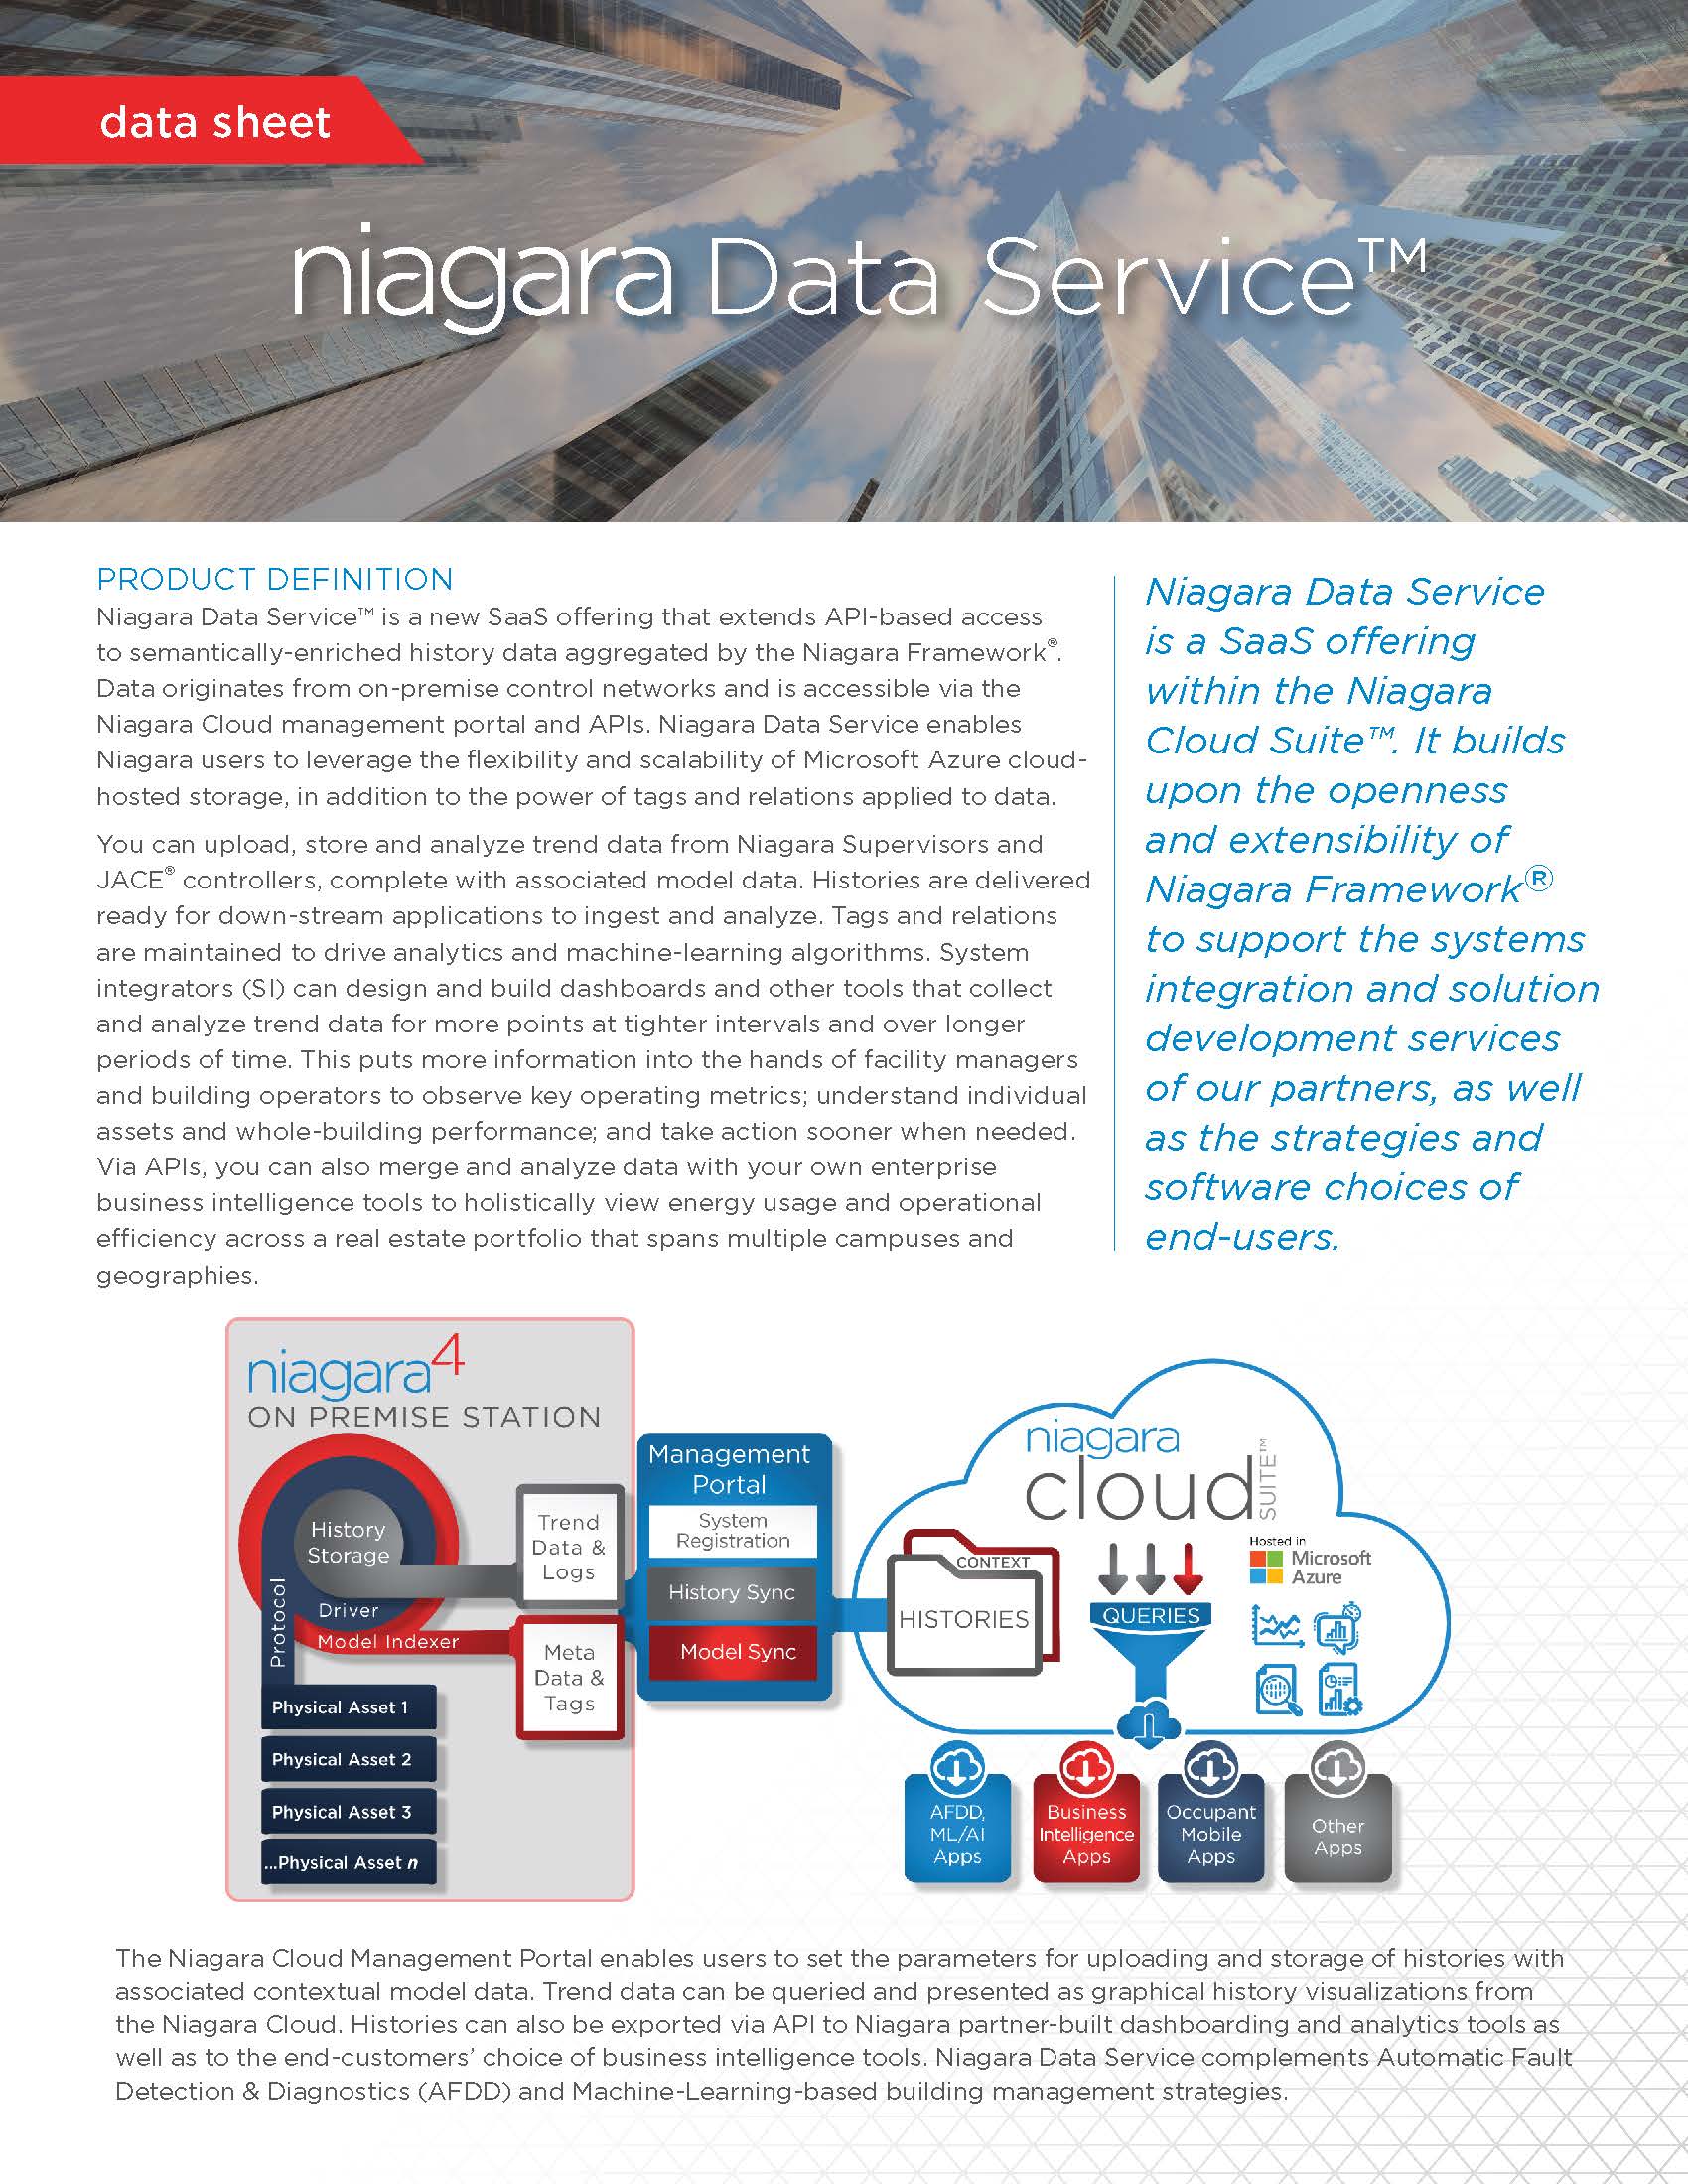 Niagara Data Service